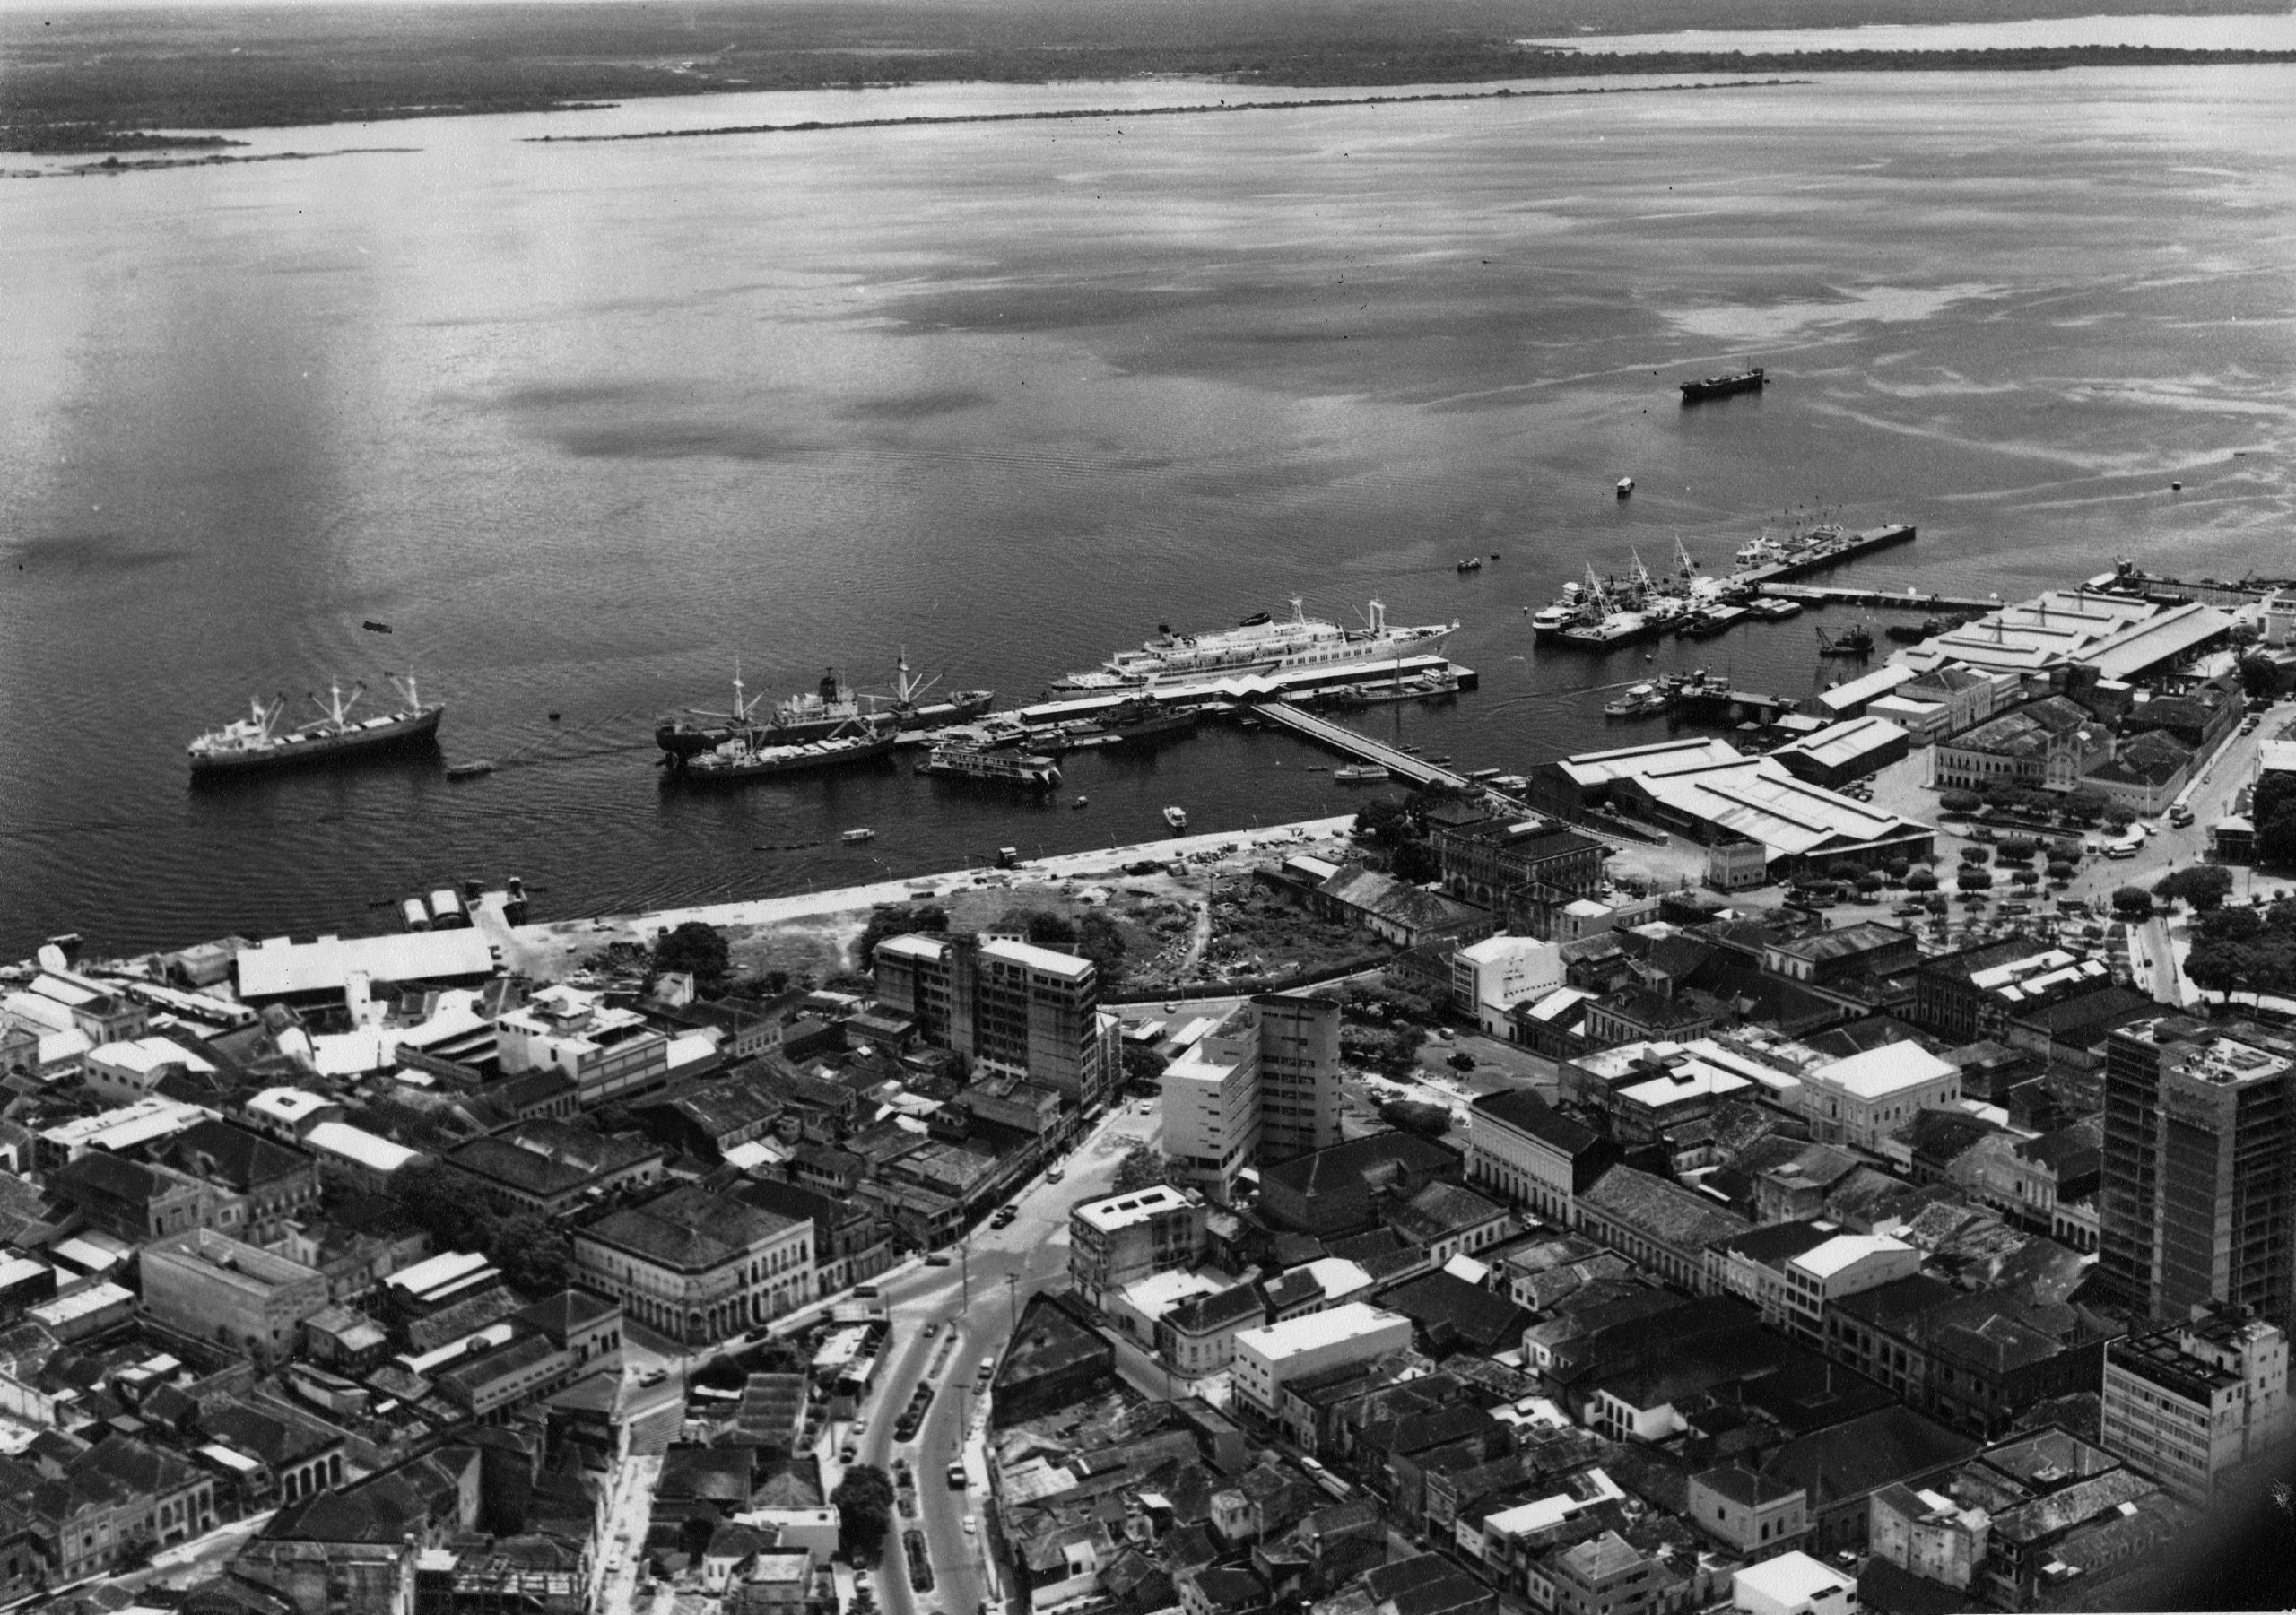 Vista aérea do Rio Negro e suas embarcações, ancoradas então. Além disso, estaque para a avenida Floriano Peixoto e rua dos Andradas.